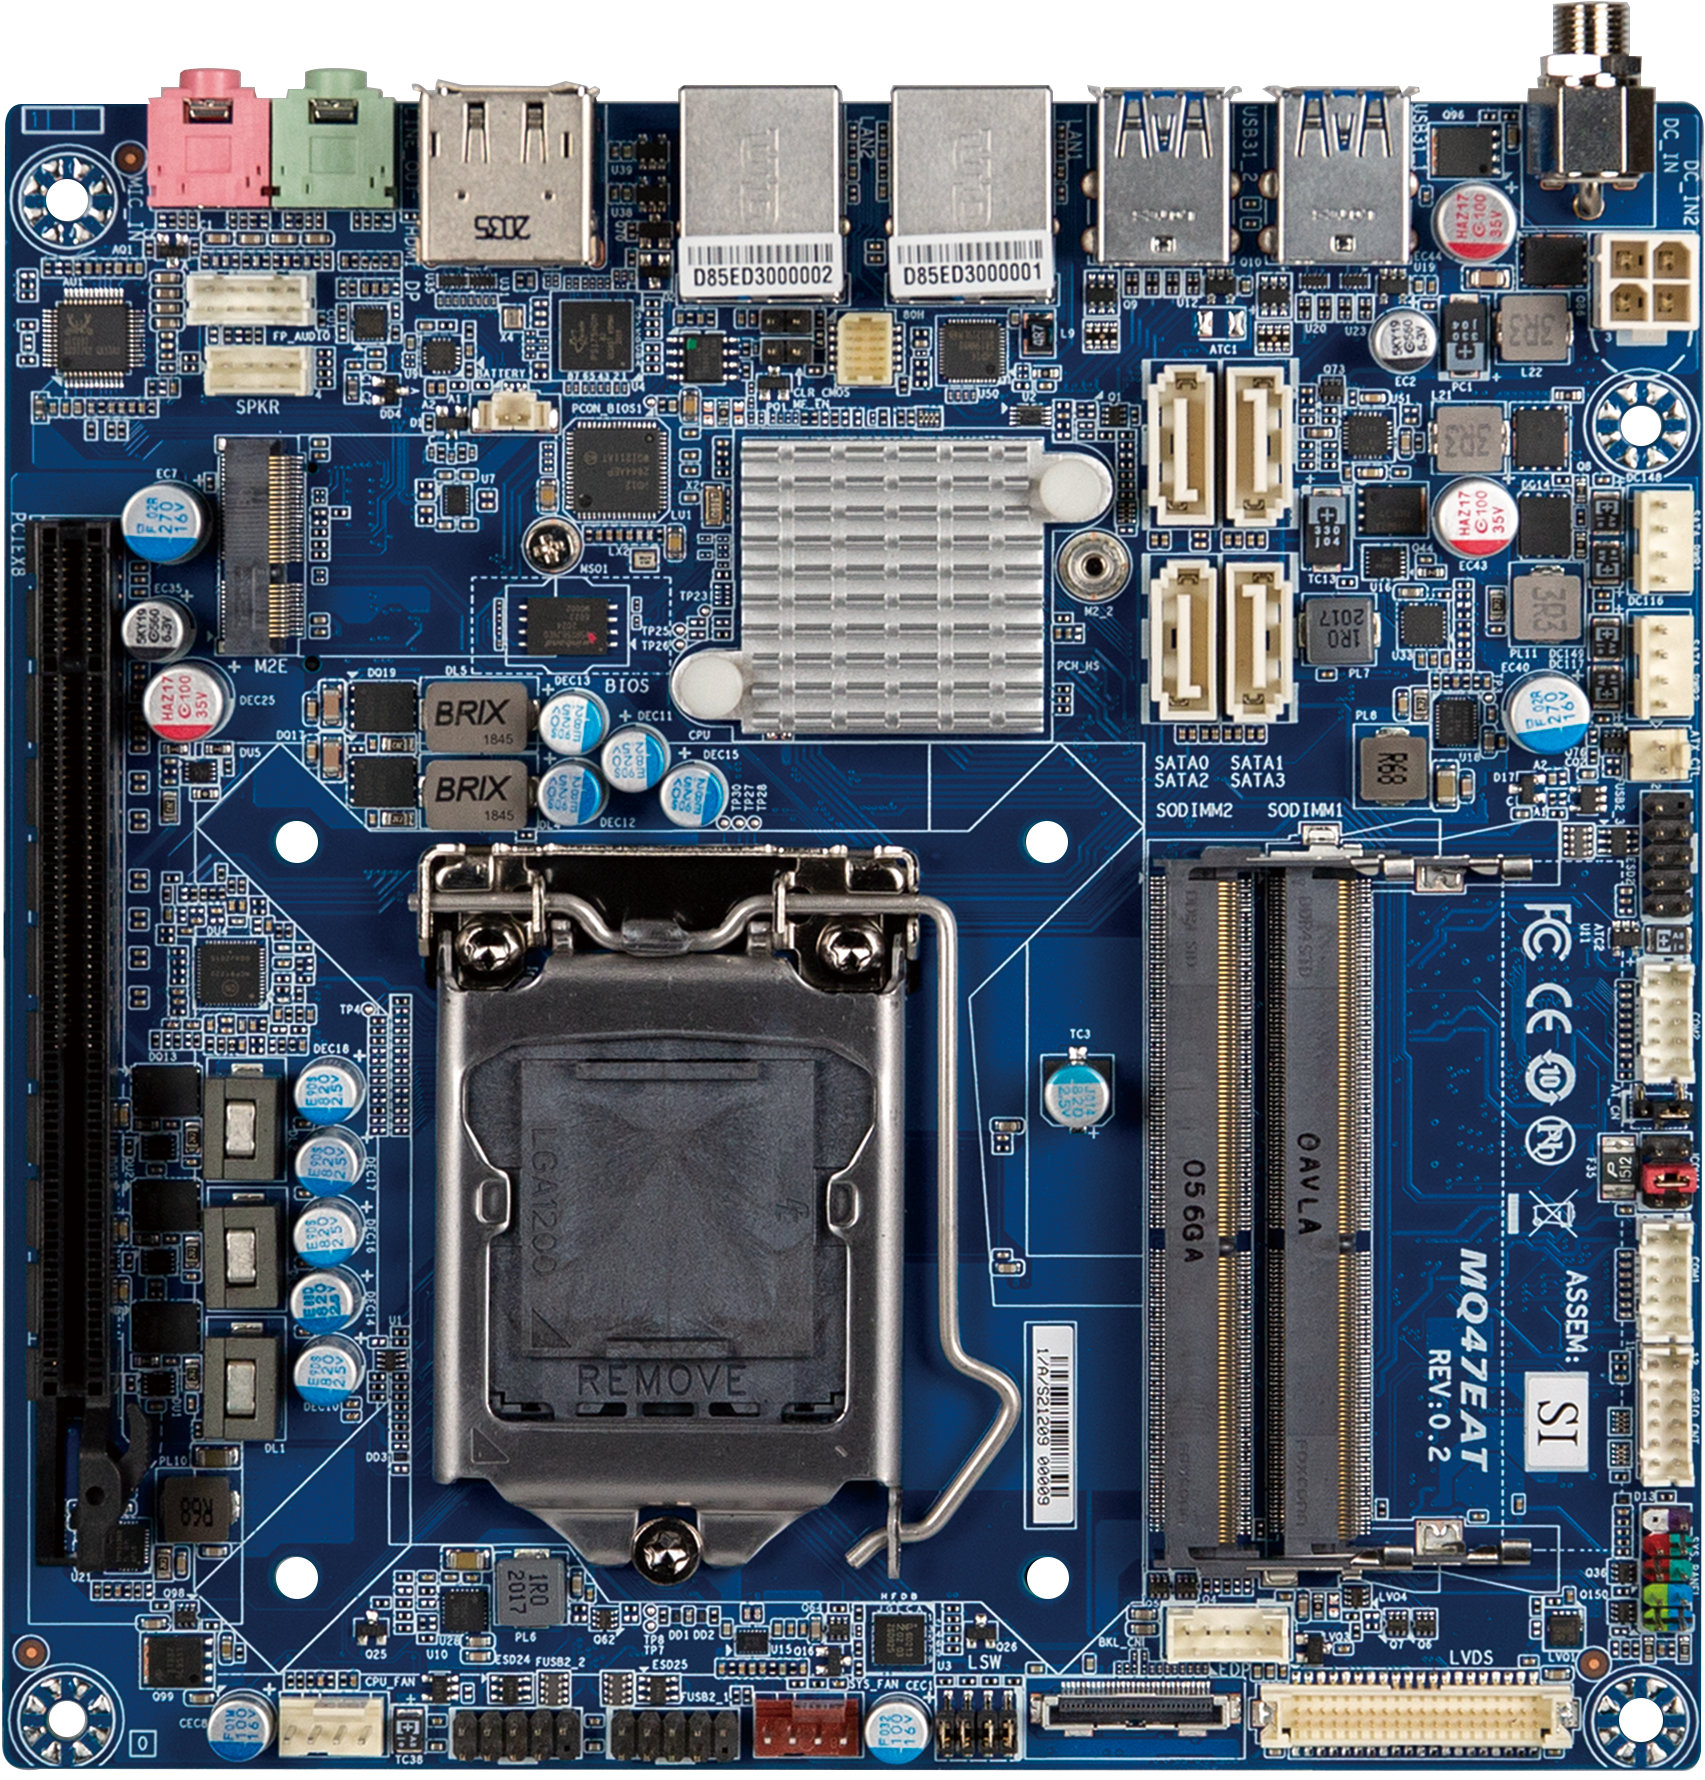 Placa madre mini-ITX - P9D-I - Asus - 4th Generation Intel® Core